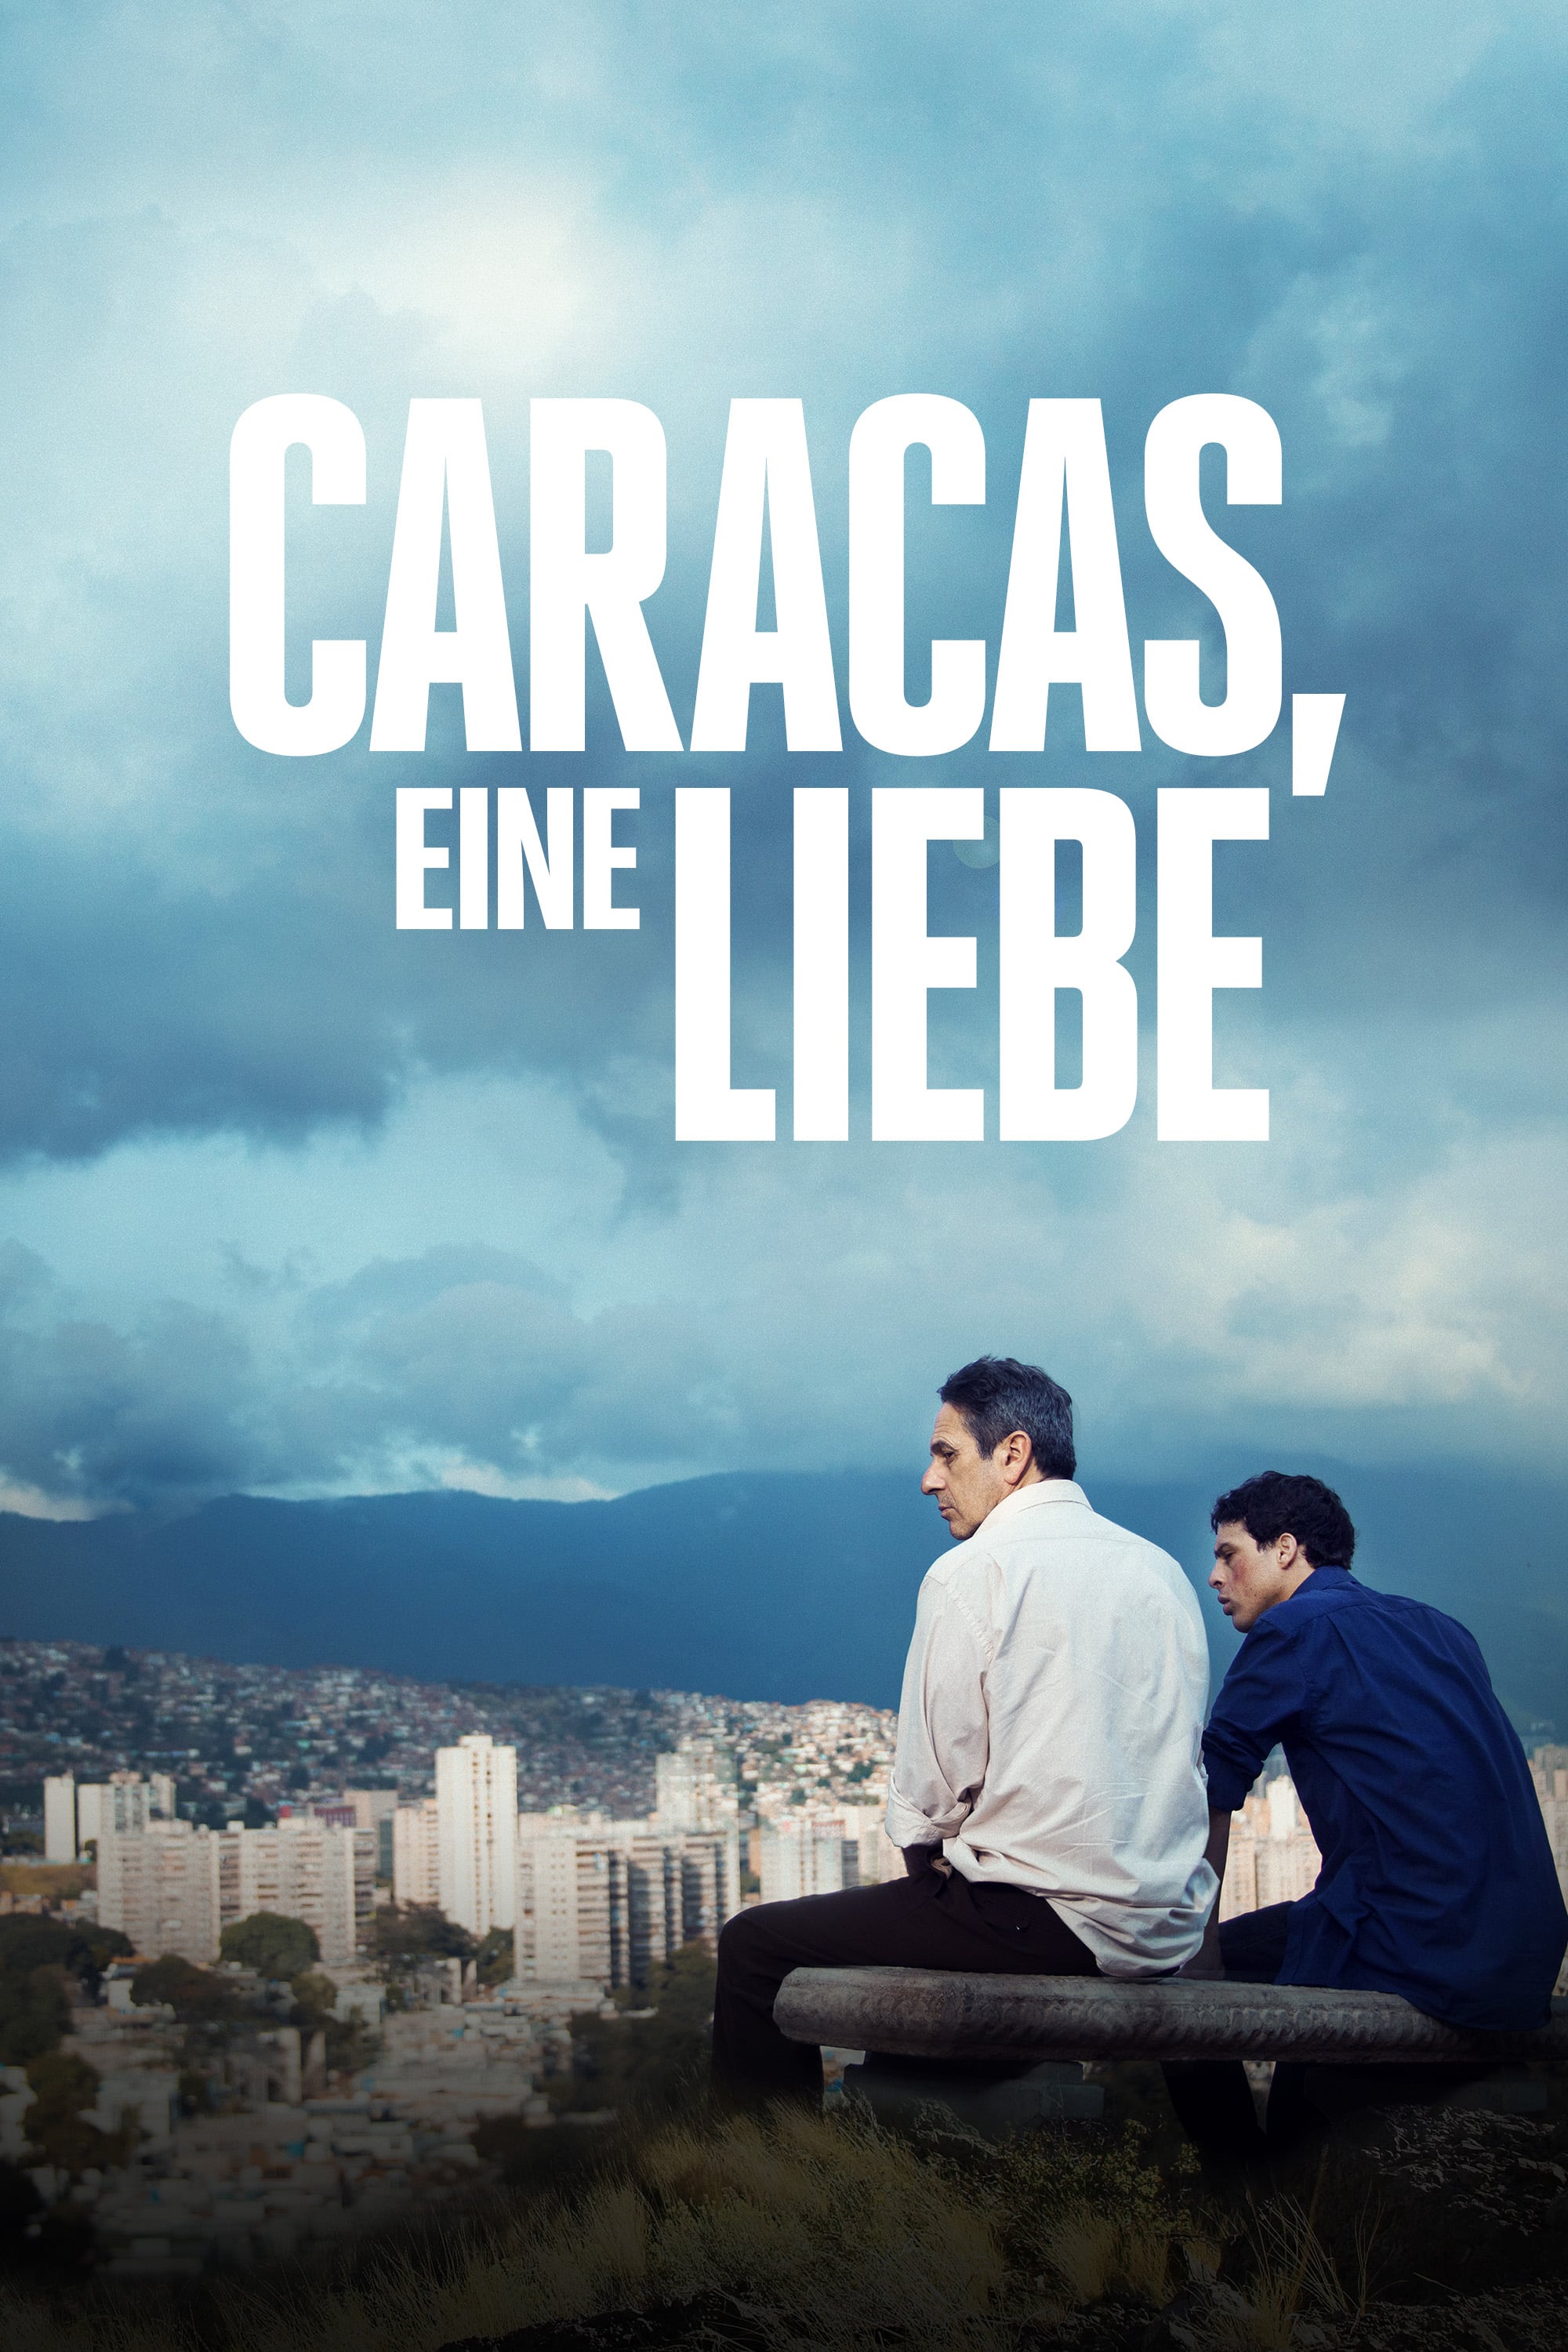 Poster Caracas, eine Liebe